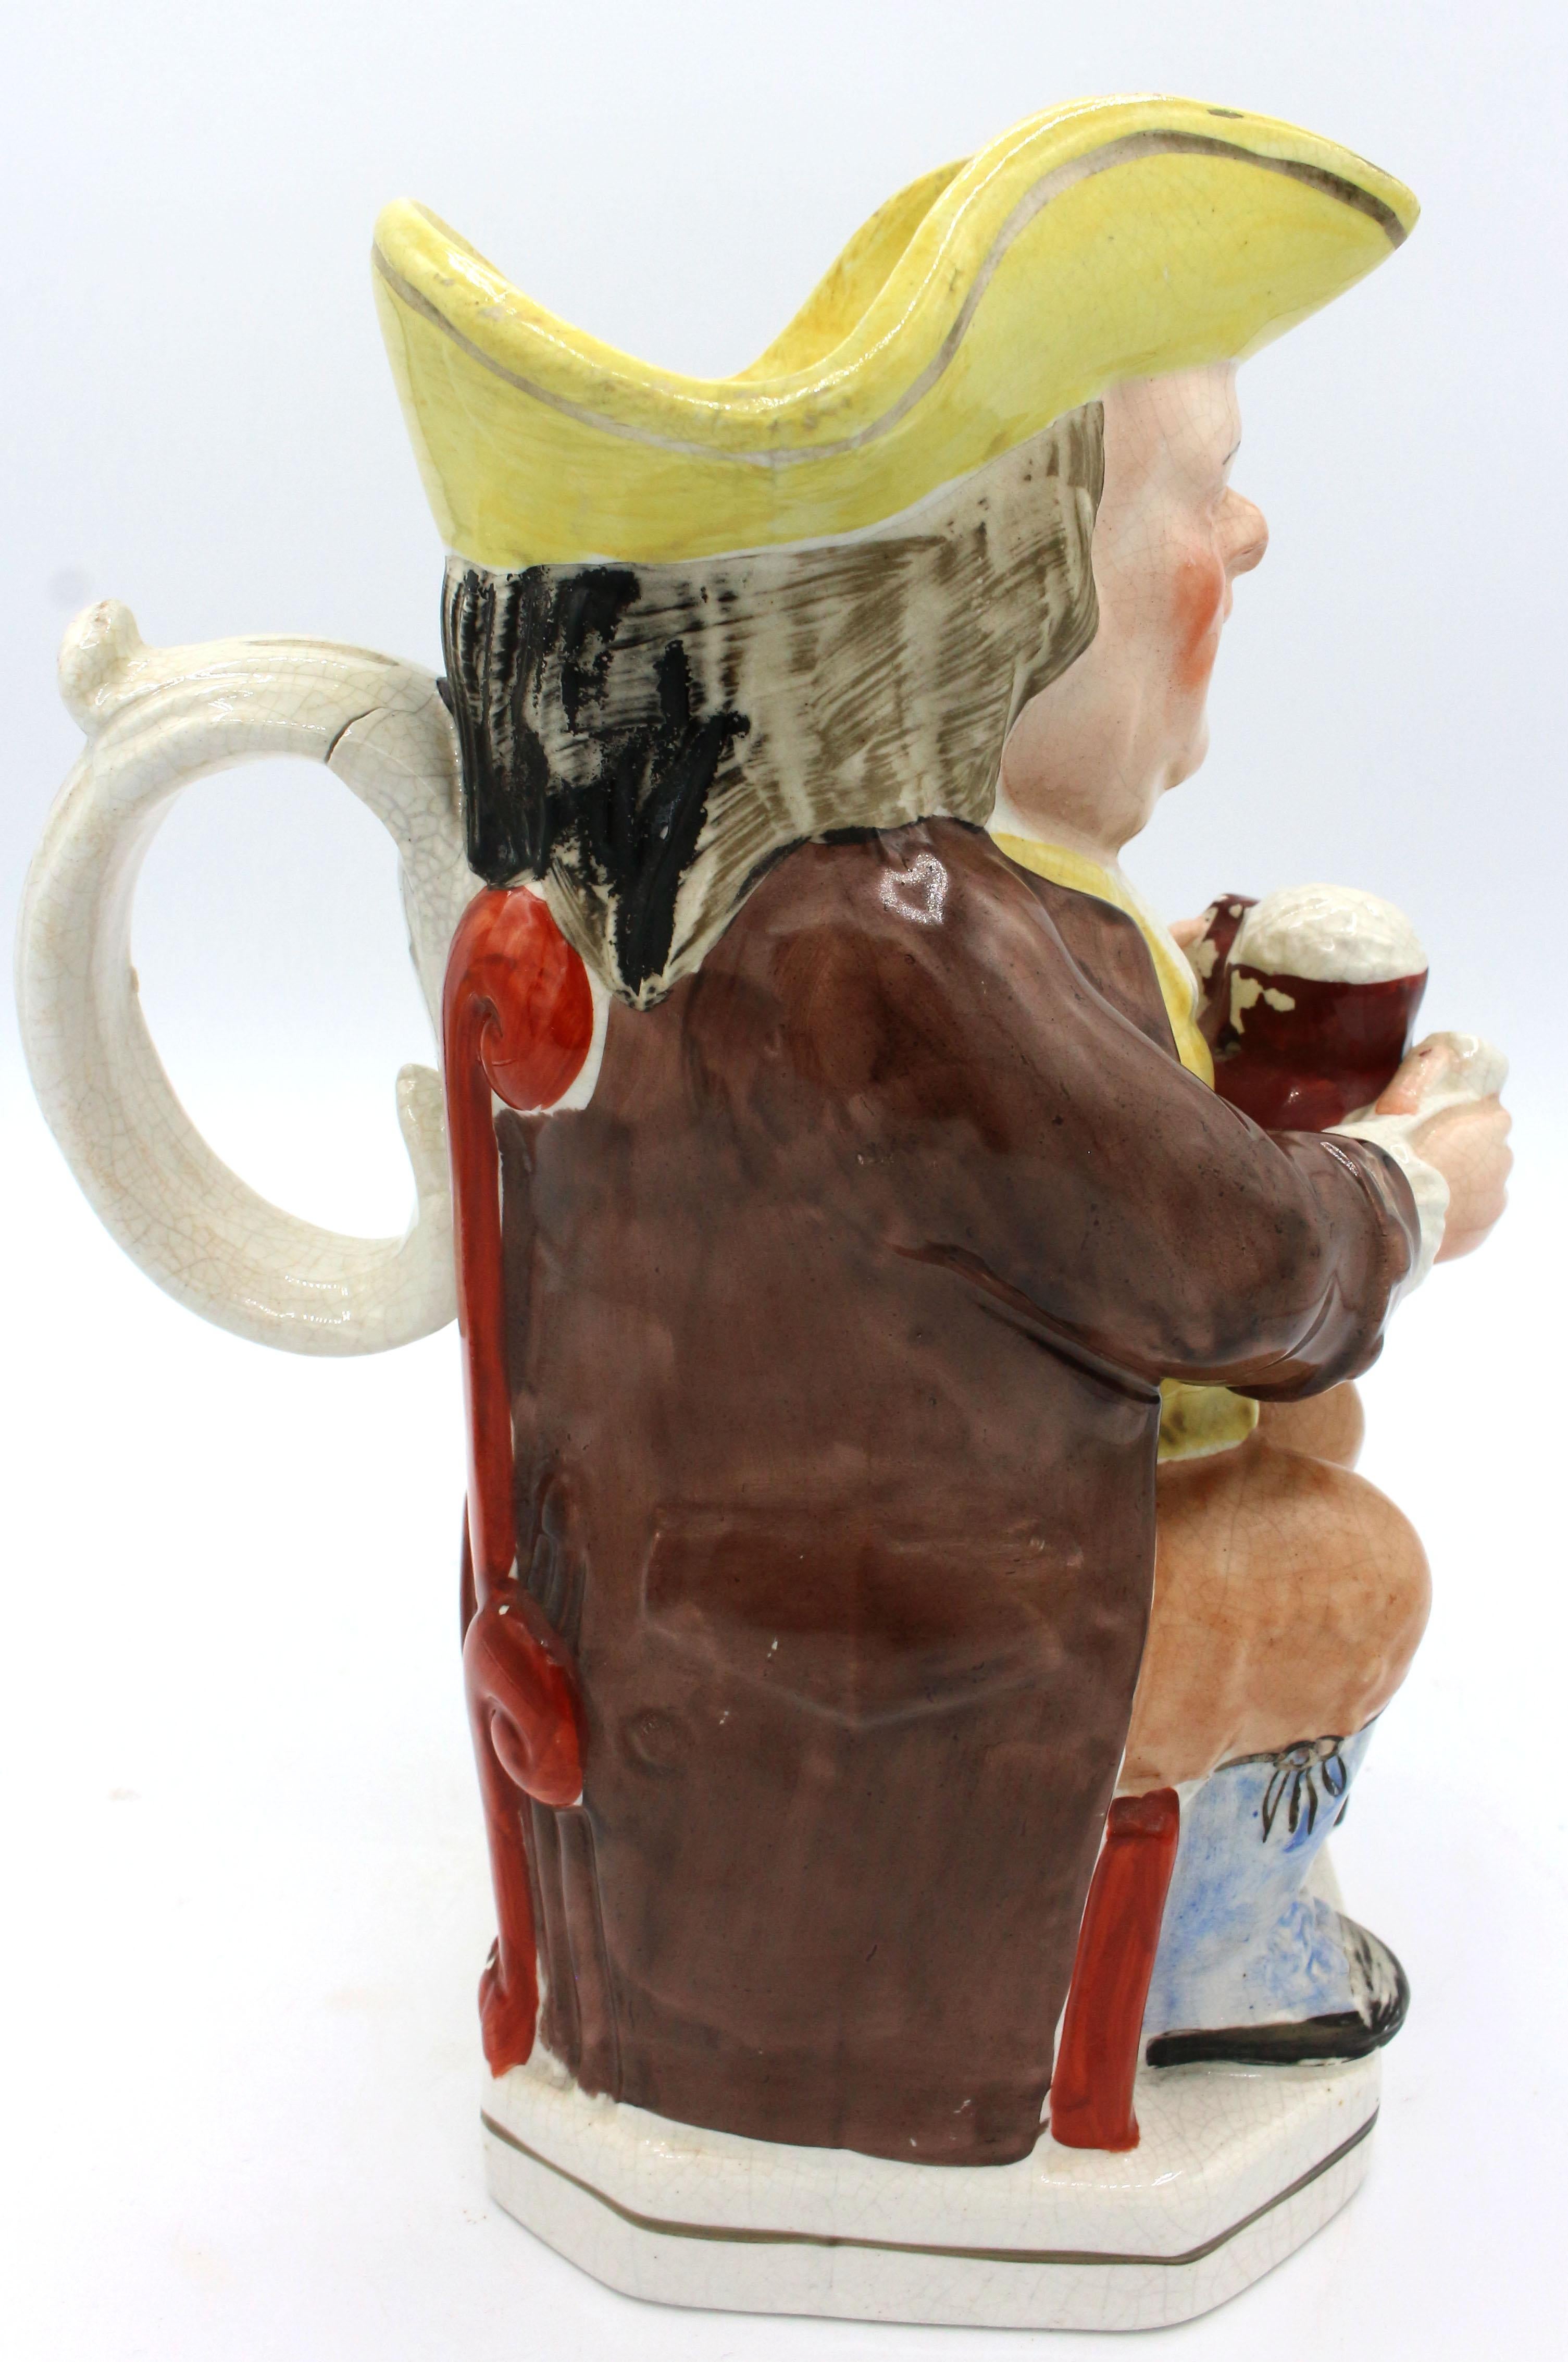 Le Parsons ivre avec un col clérical blanc Toby Jug, Angleterre, vers les années 1880. Staffordshire. Glaçure craquelée et défaut de cuisson dans la poignée. Il tient une tasse mousseuse et une pipe.
10